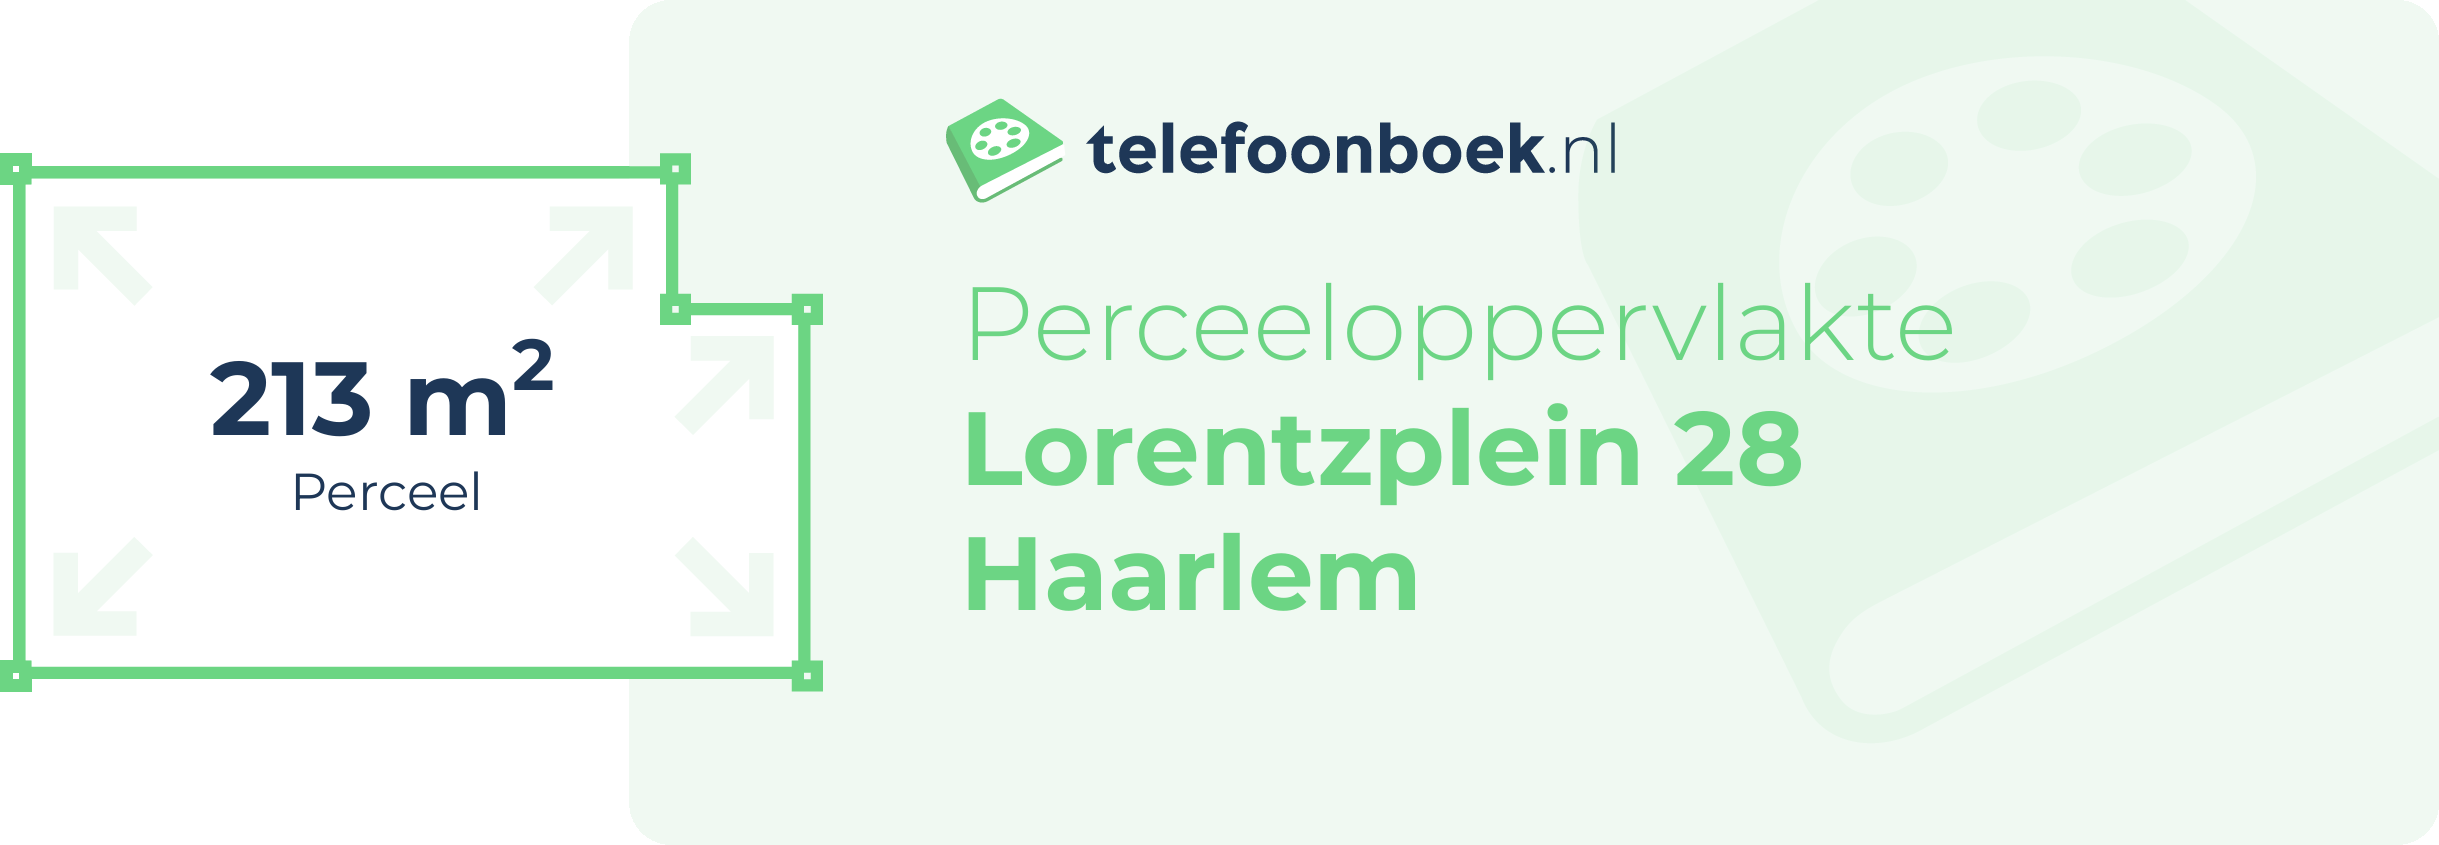 Perceeloppervlakte Lorentzplein 28 Haarlem